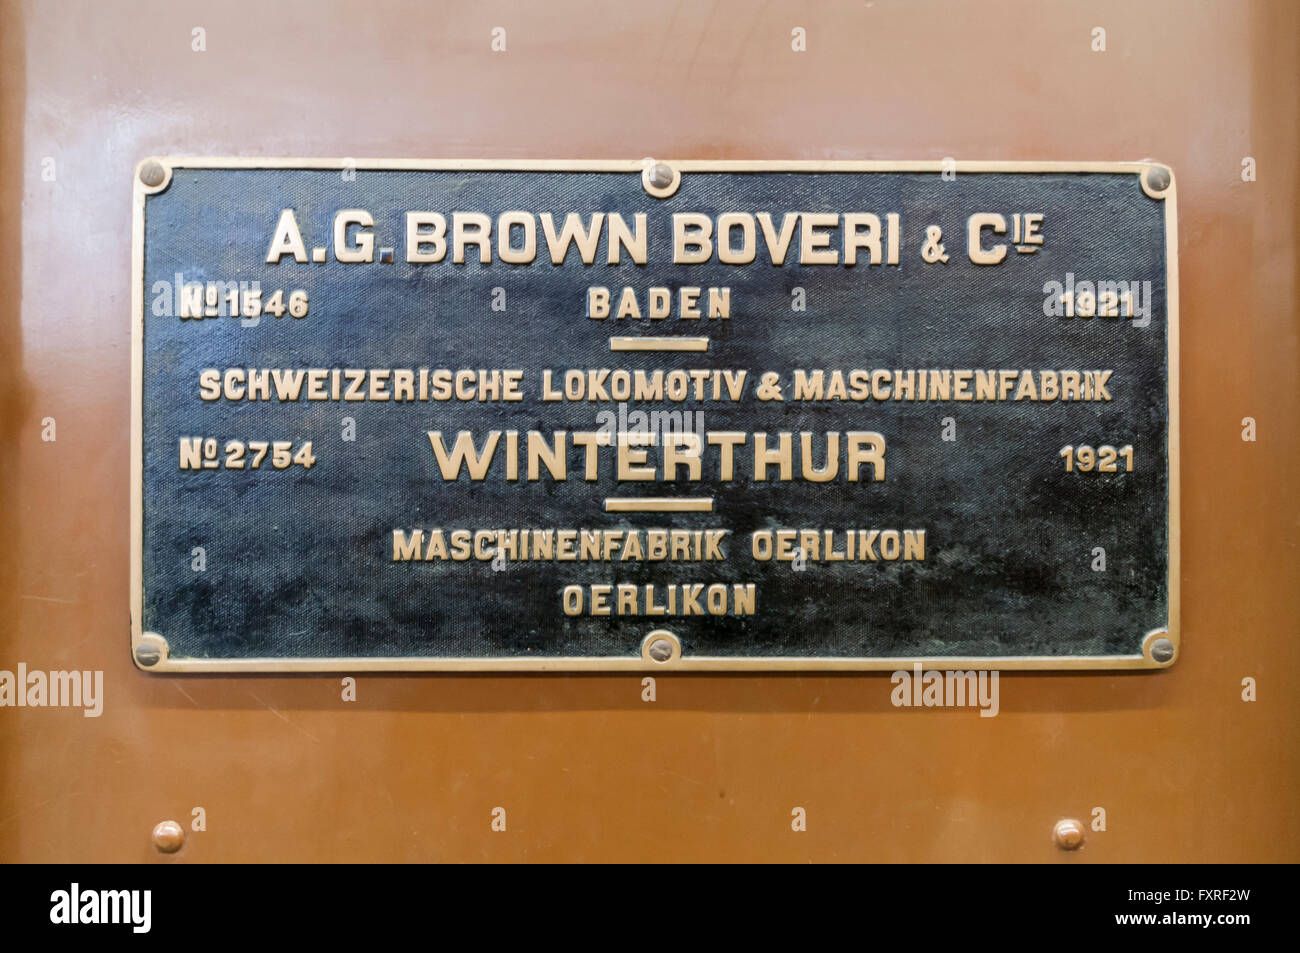 Locomotive builder sign listing Brown Boveri & Co., Schweizerische Lokomotiv- und Maschinenfabrik, and Maschinenfabrik Oerlikon. Stock Photo